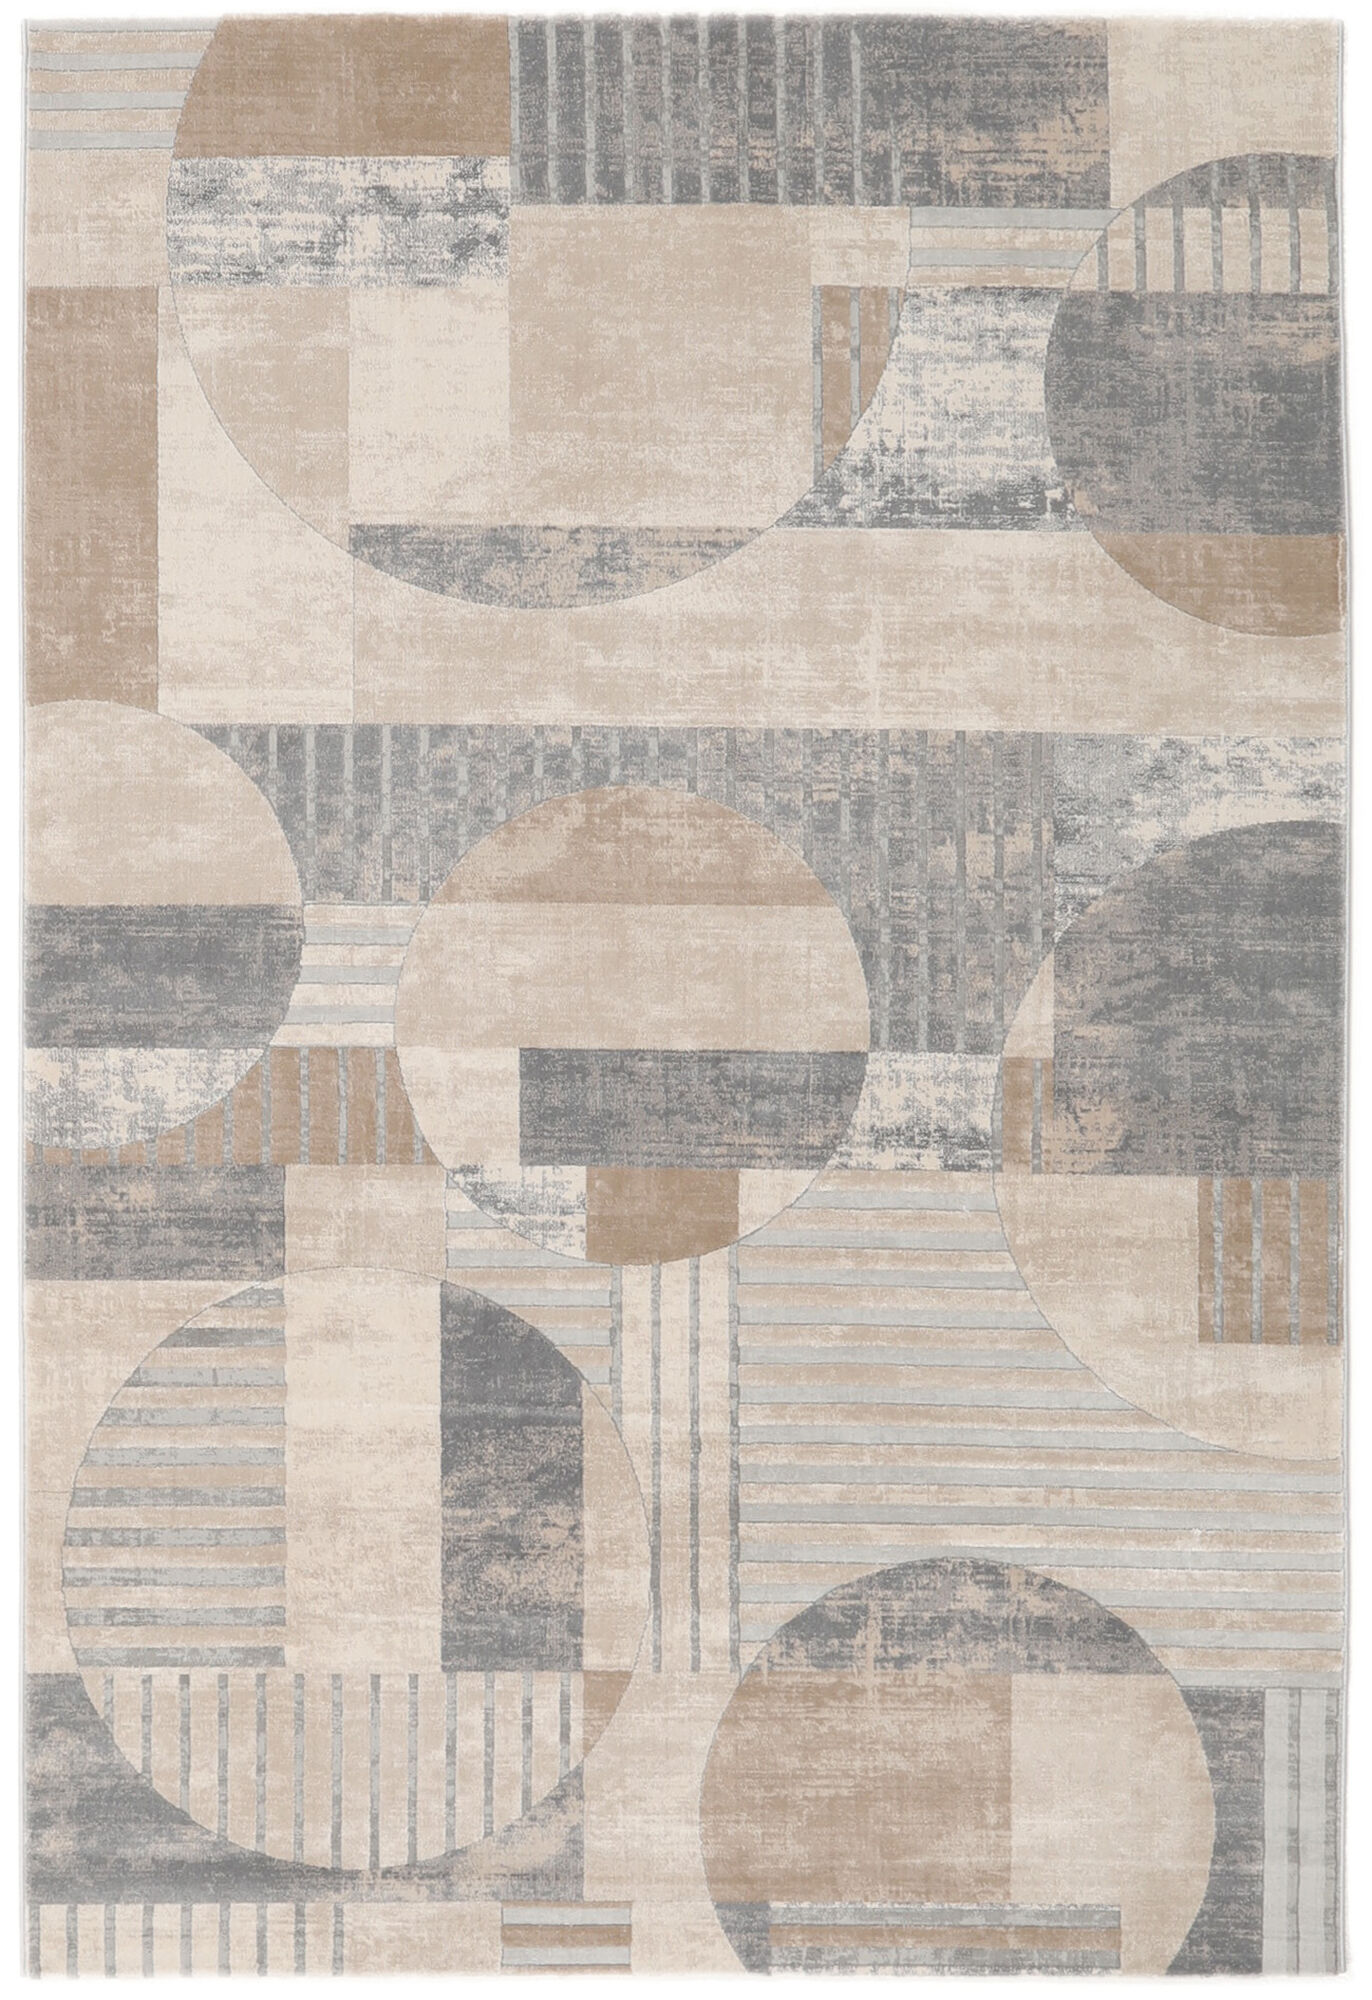 Soldes - Tapis contemporain beige 160x230 - Gradient - Interior's